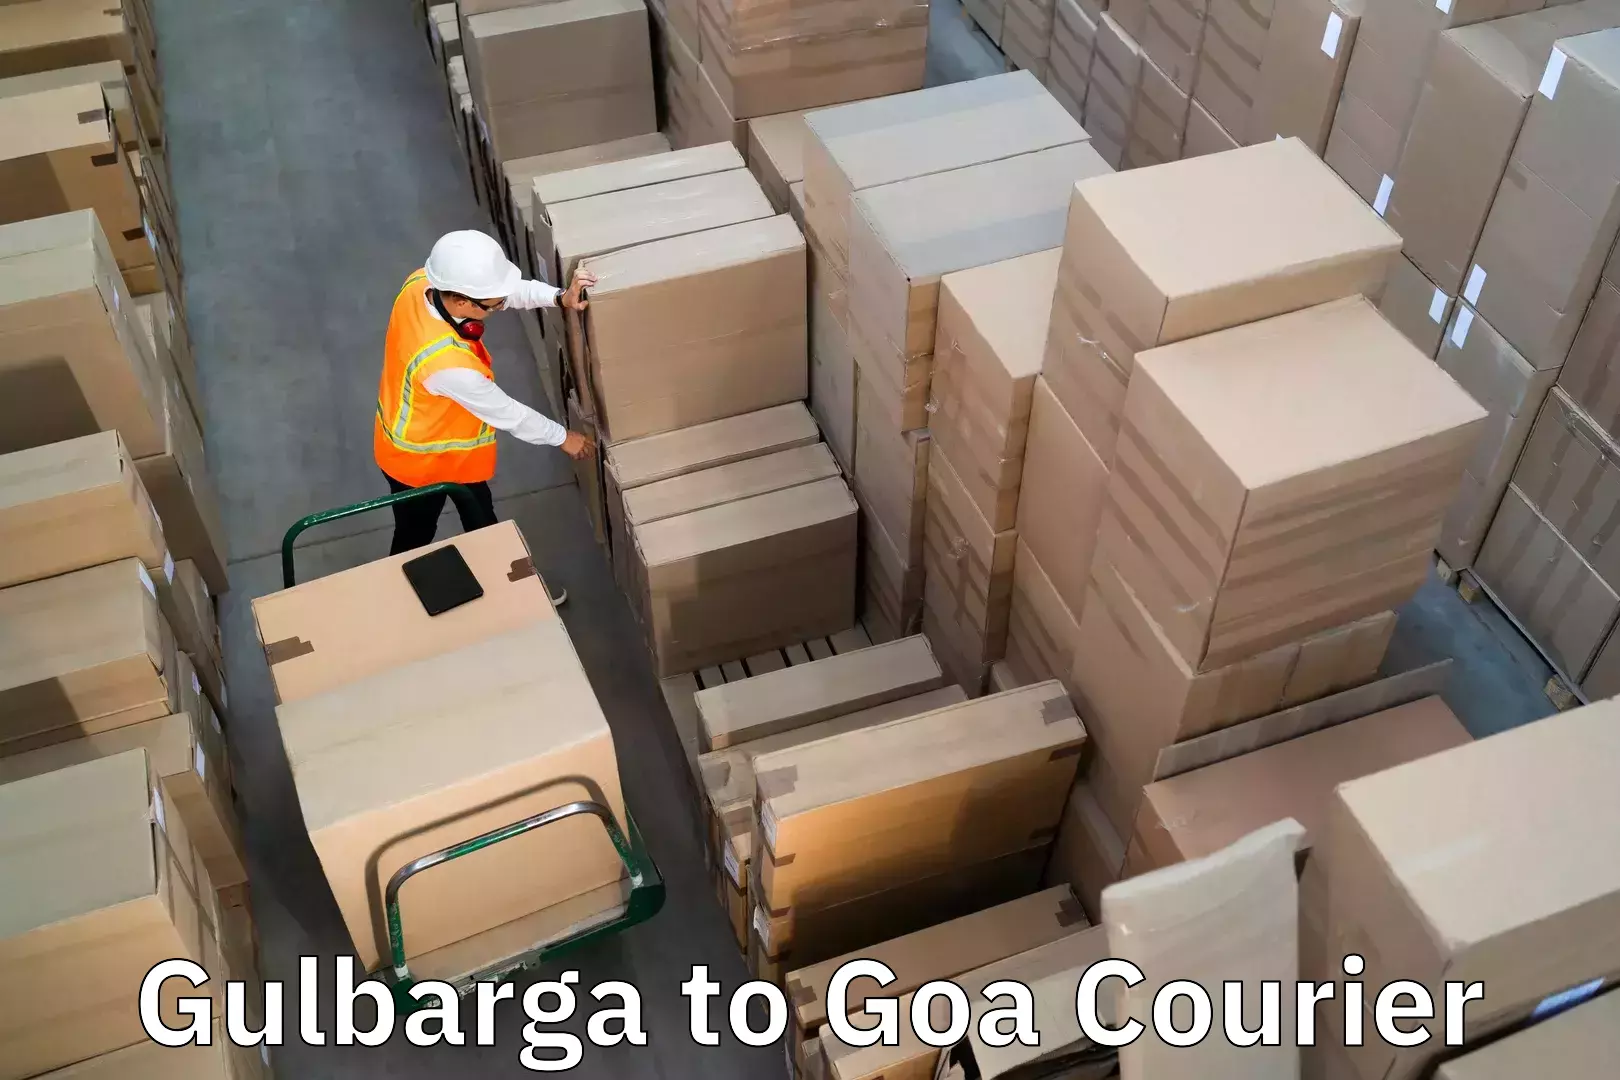 Luggage transport company Gulbarga to NIT Goa